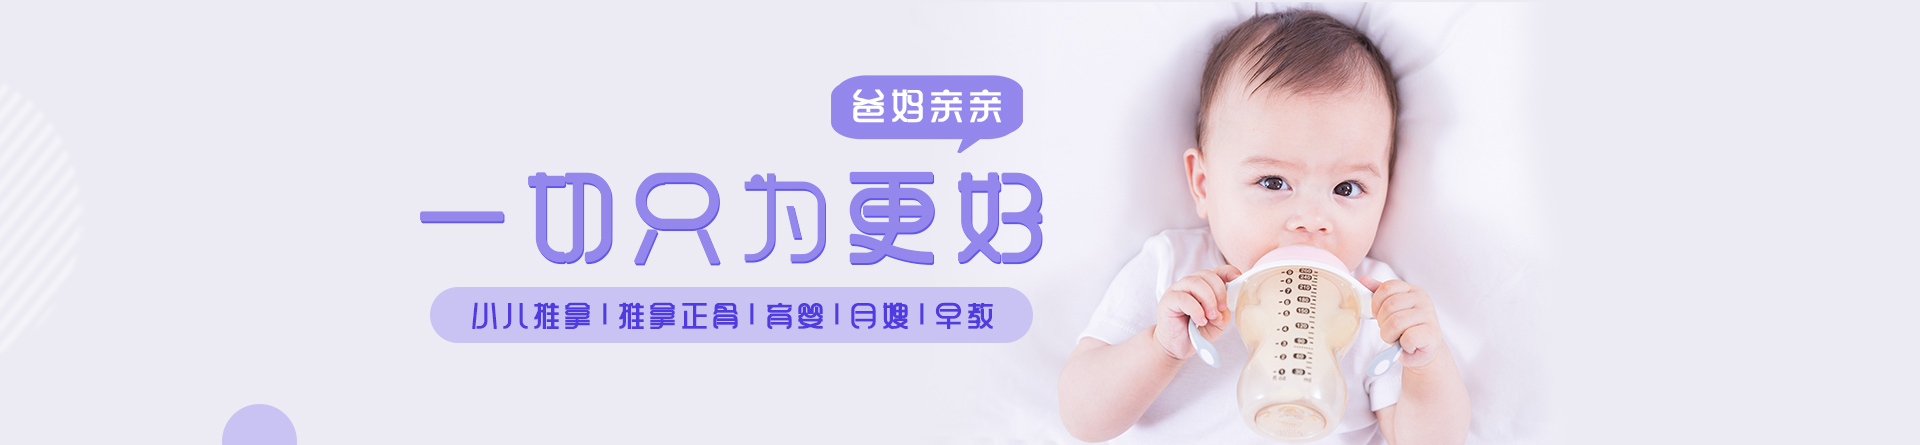 深圳爸媽親親母嬰培訓學校